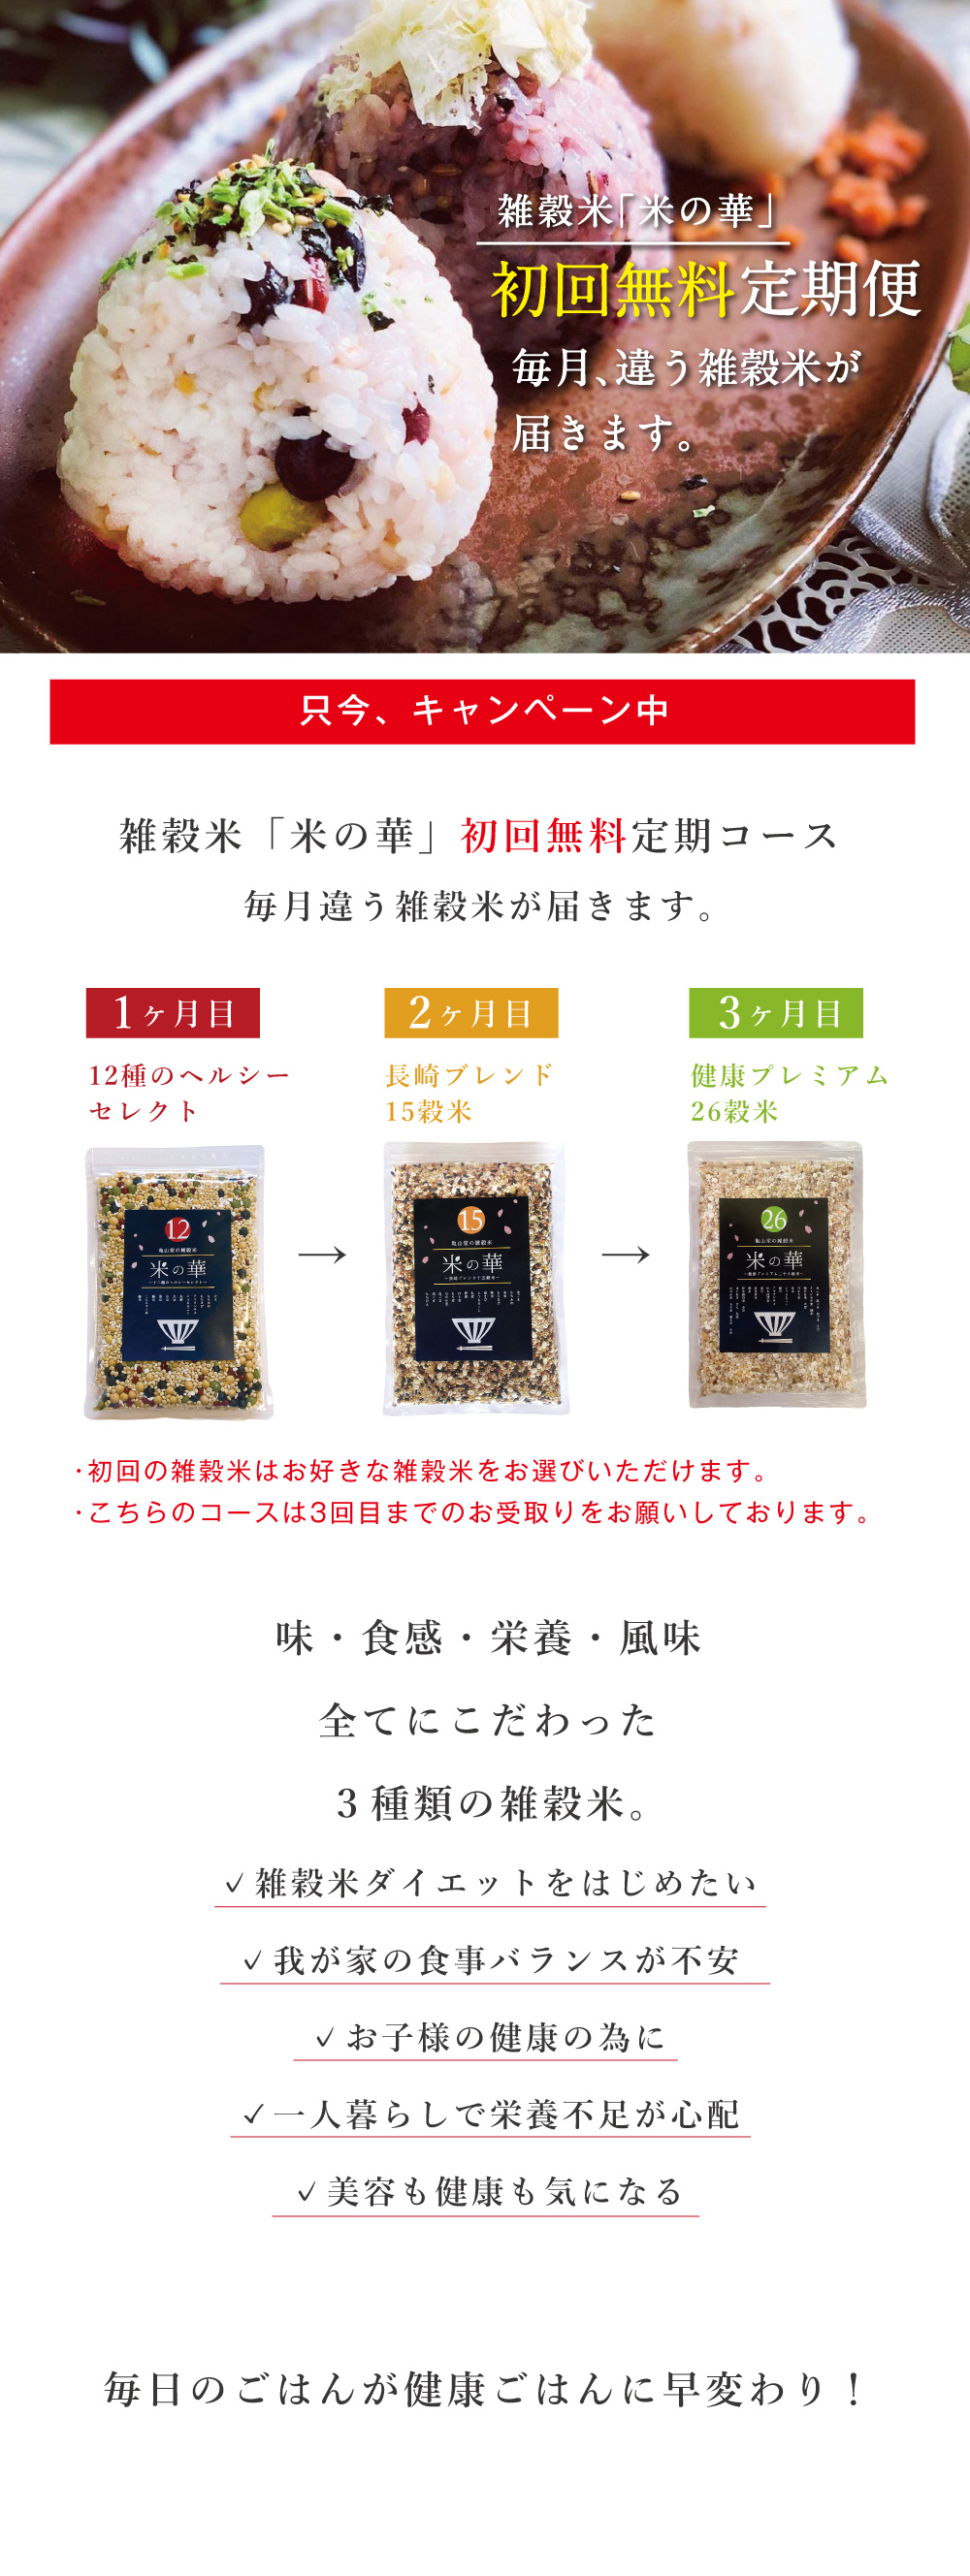 雑穀米「米の華」3種類食べ比べセット。味・食感・栄養・風味、全てにこだわった3種類の雑穀米です。